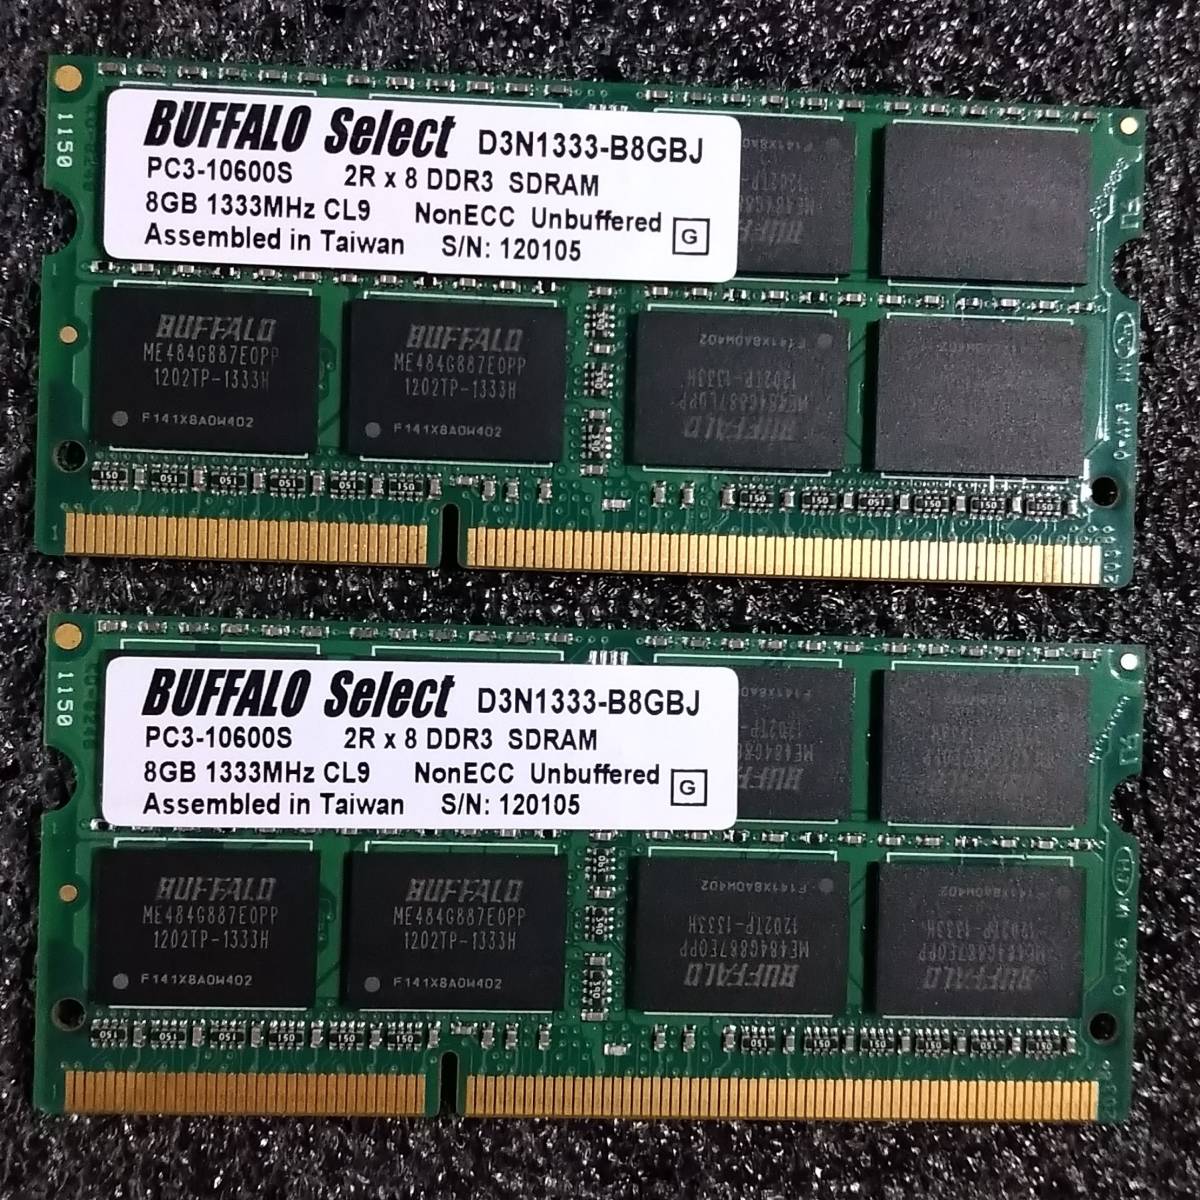 【中古】DDR3 SODIMM 16GB(8GB2枚組) BUFFALO D3N1333-B8GBJ [DDR3-1333 PC3-10600 1.5V]